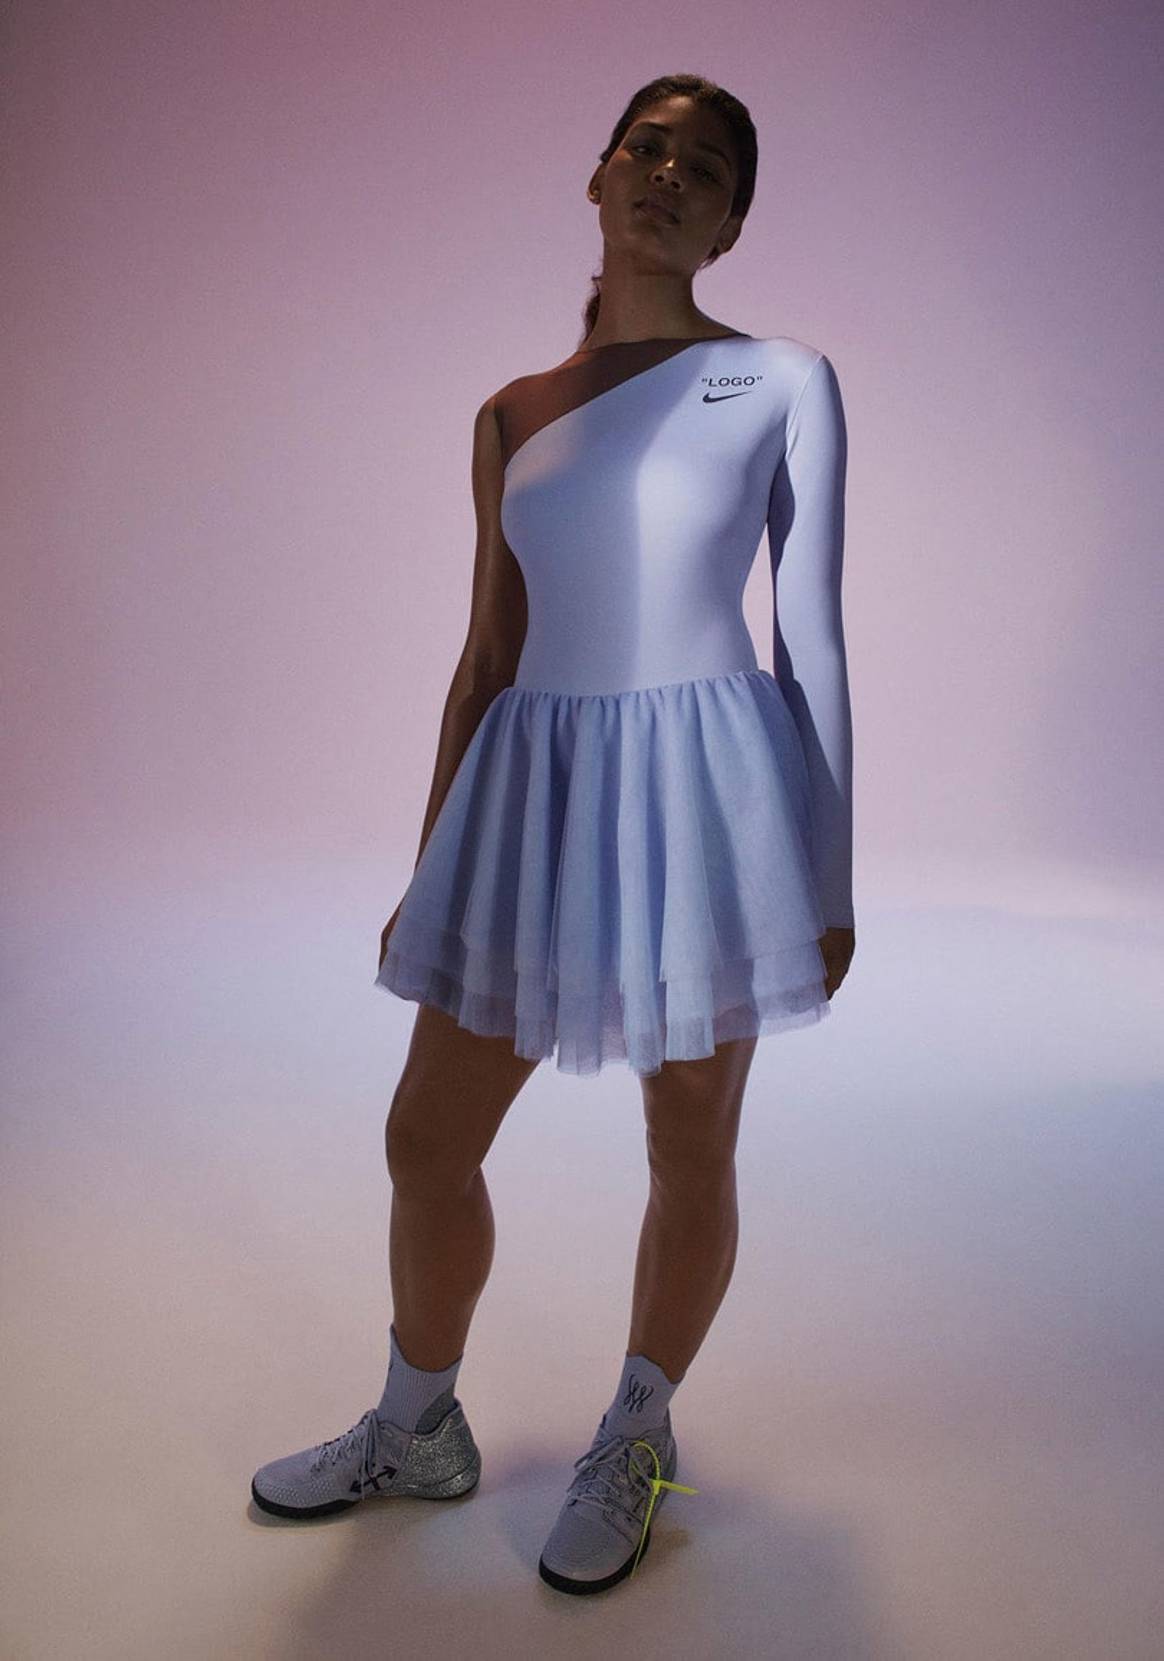 Virgil Abloh signe la nouvelle collection de Nike en hommage à Serena Williams